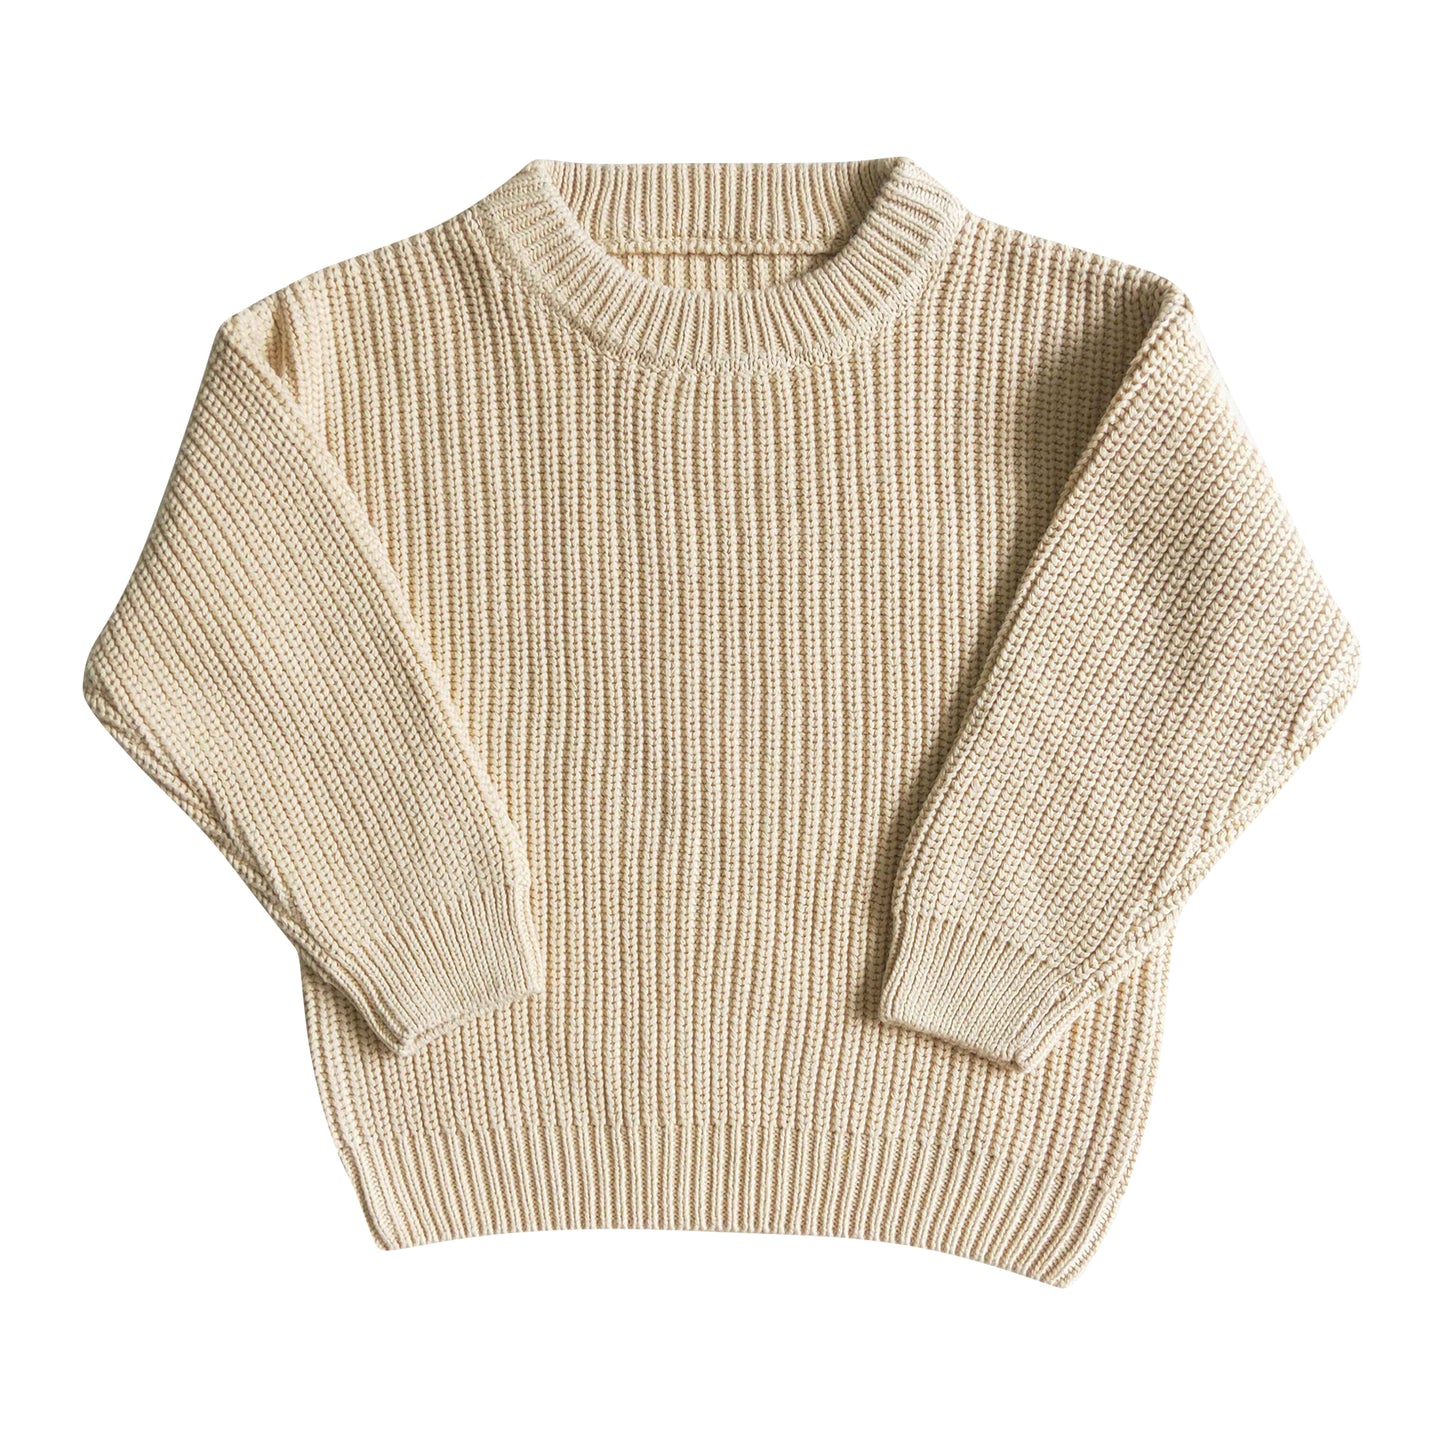 soft creamy-white cotton wool sweater fall/winter